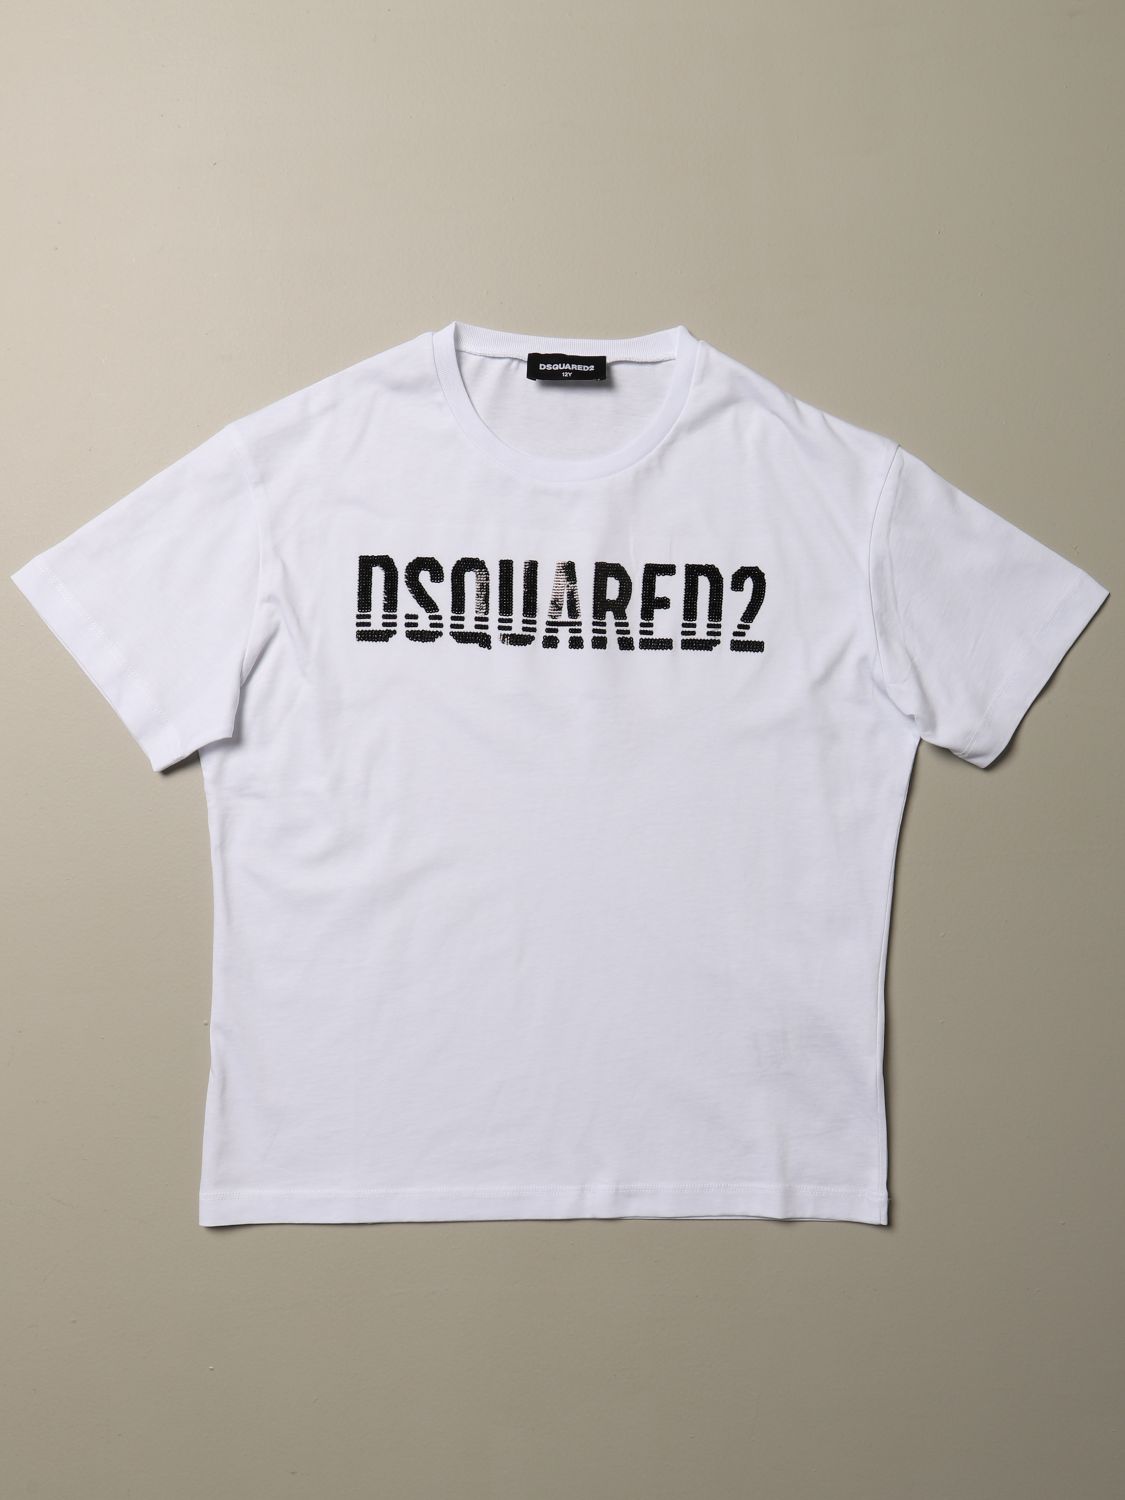 dsquared2 dan fit t shirt wit